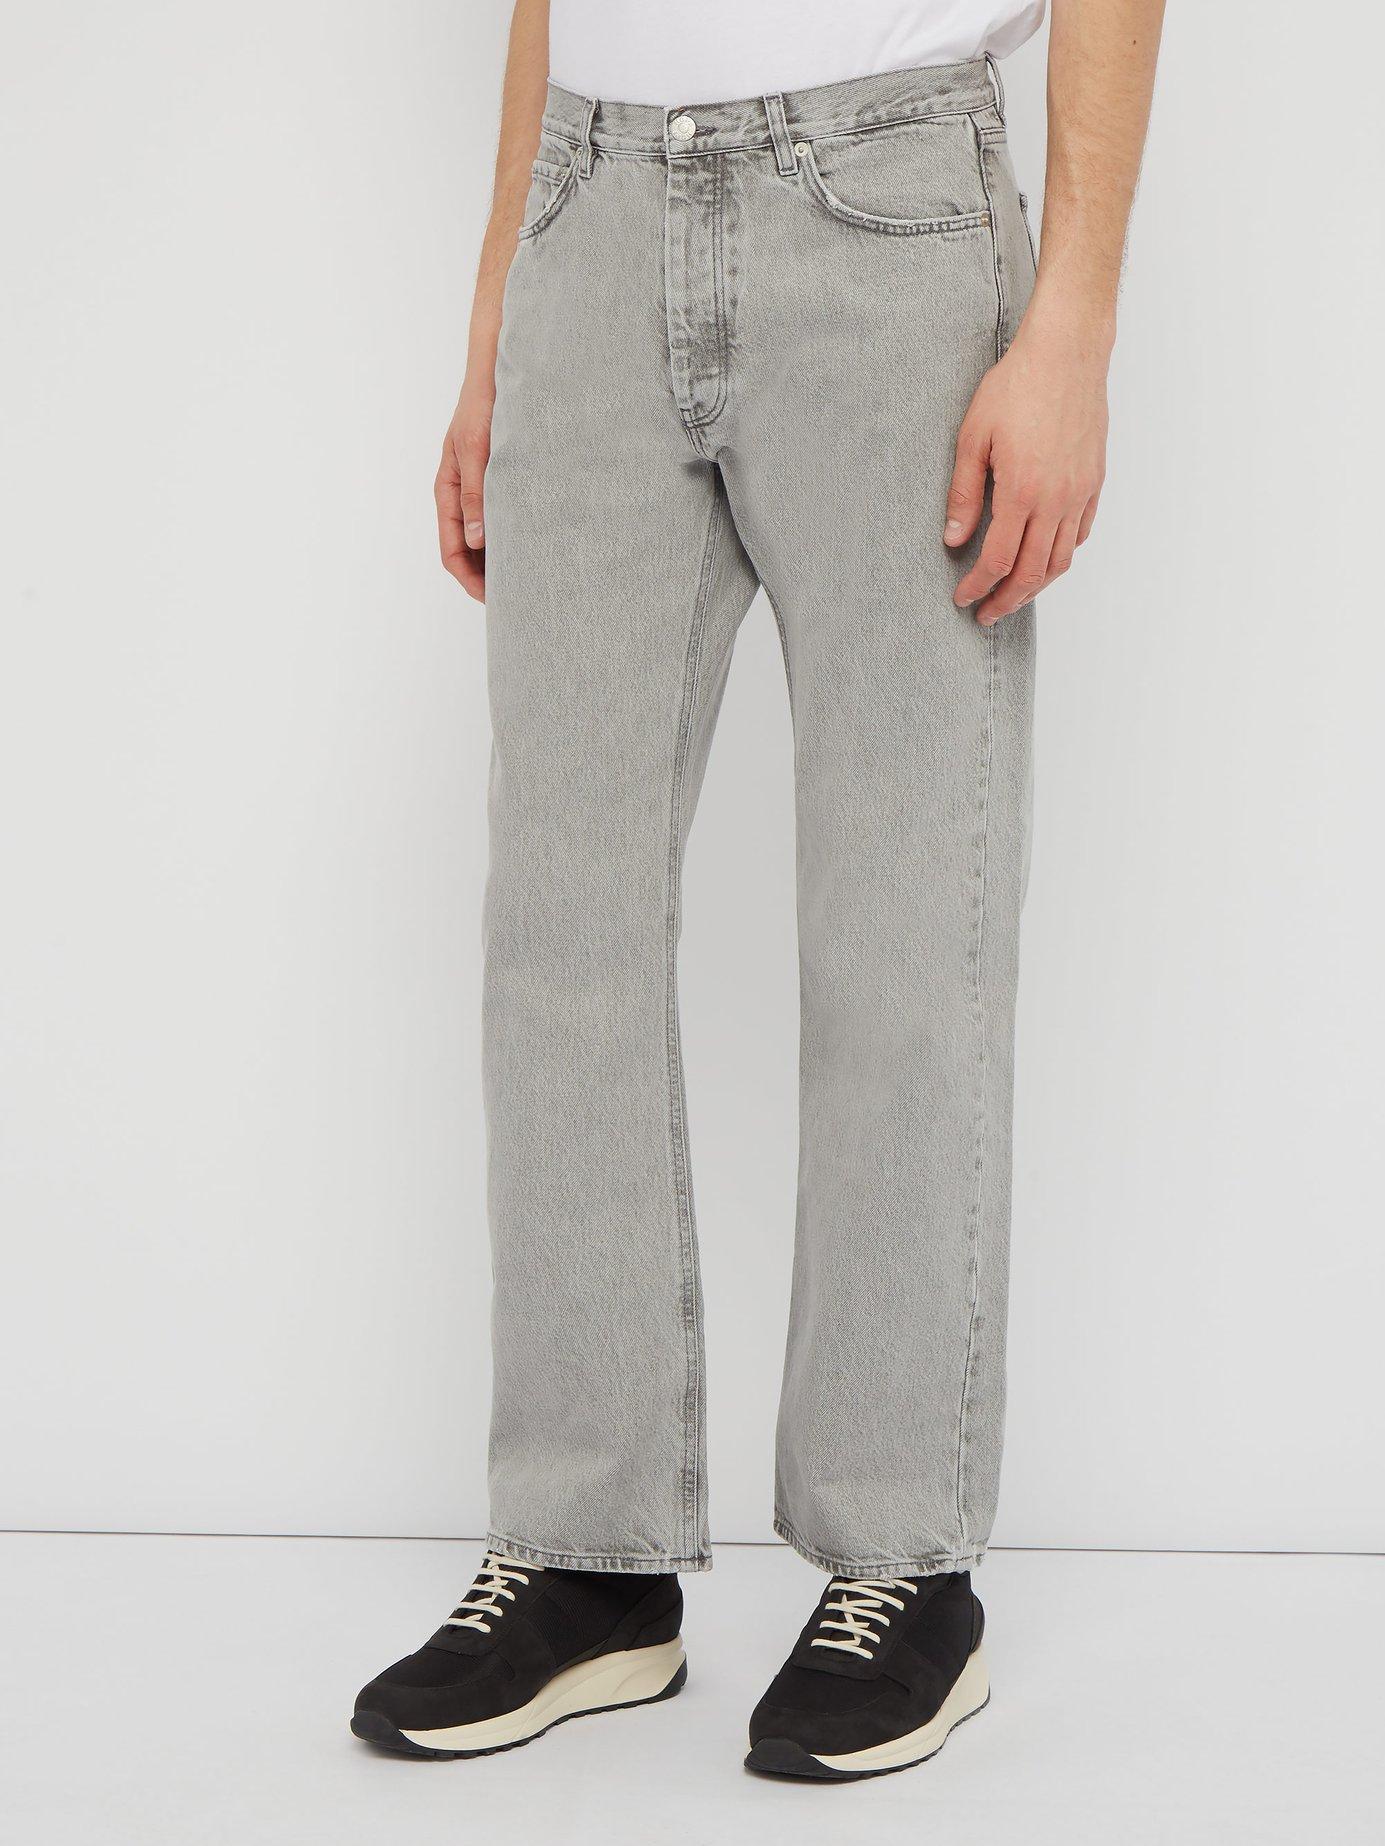 Hope Denim Rush Straight Leg Jeans in Light Grey (Gray) for Men - Lyst